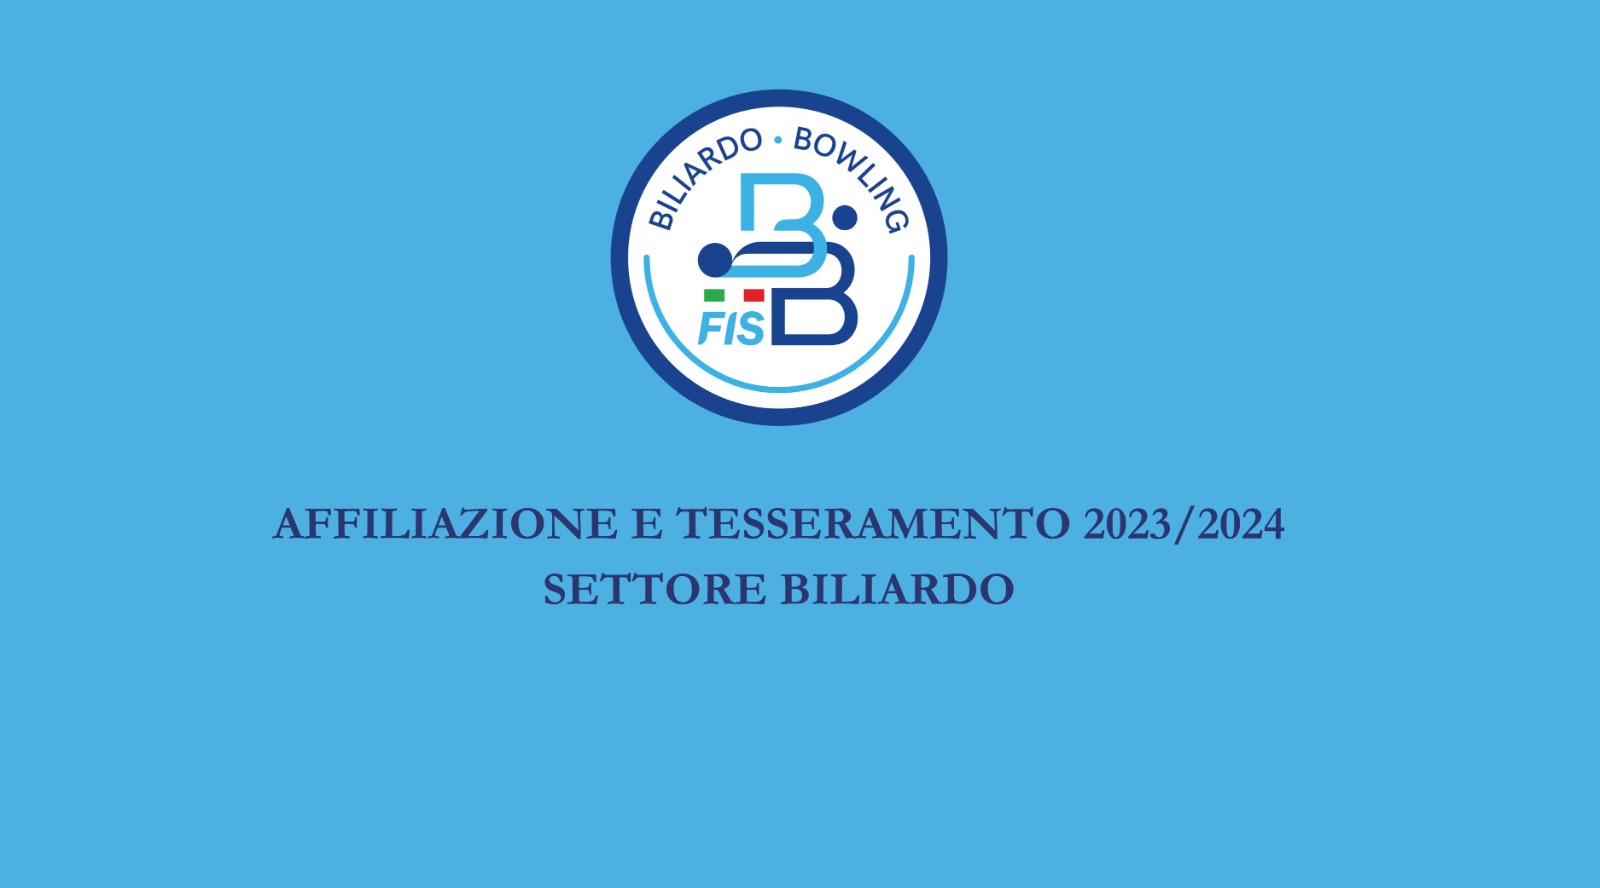 AFFILIAZIONE E TESSERAMENTO 2023-2024 - SETTORE BILIARDO